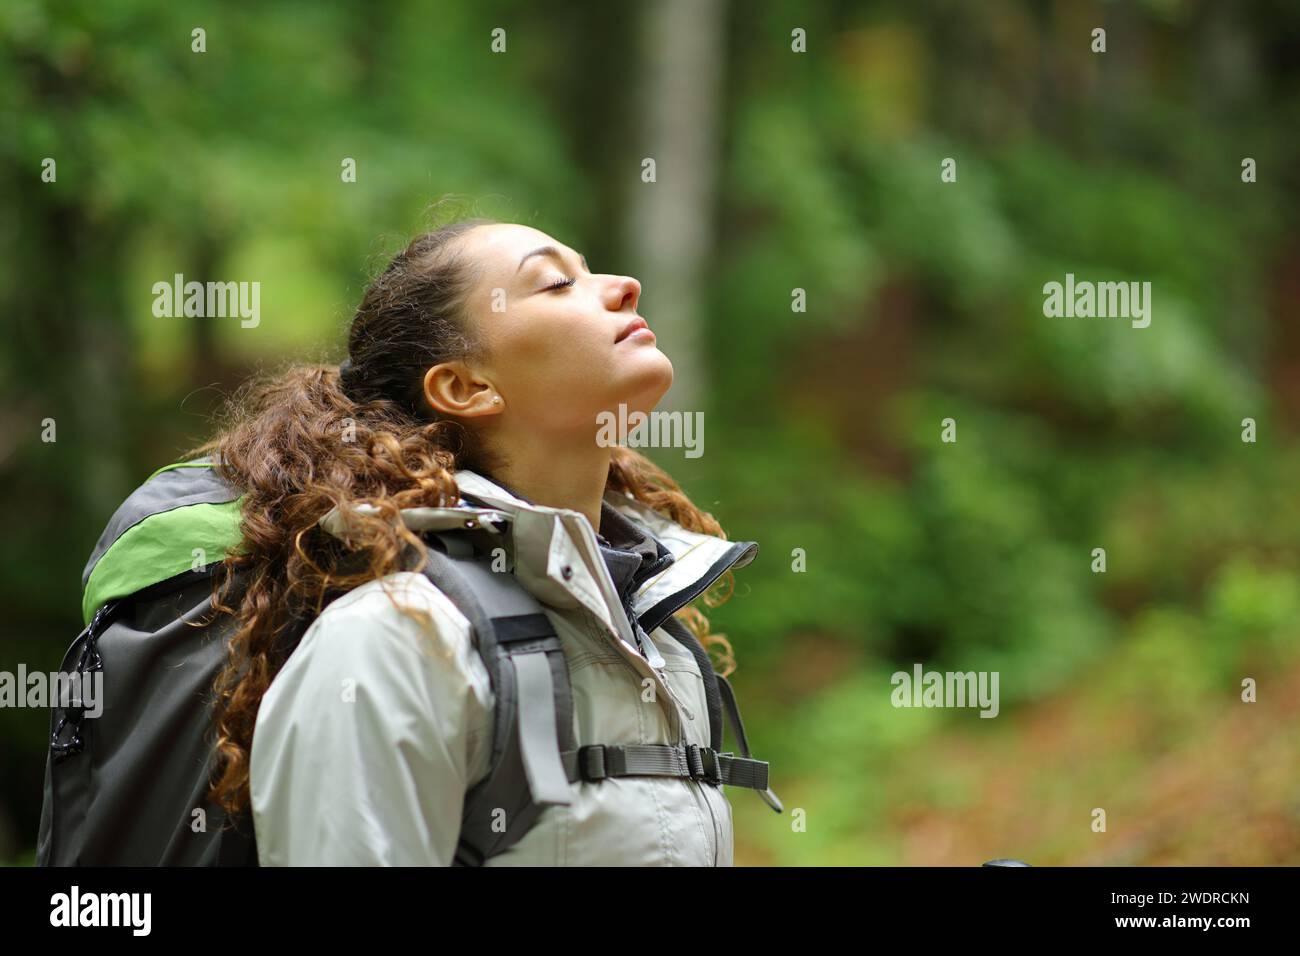 Profil d'un randonneur respirant l'air frais dans une forêt Banque D'Images